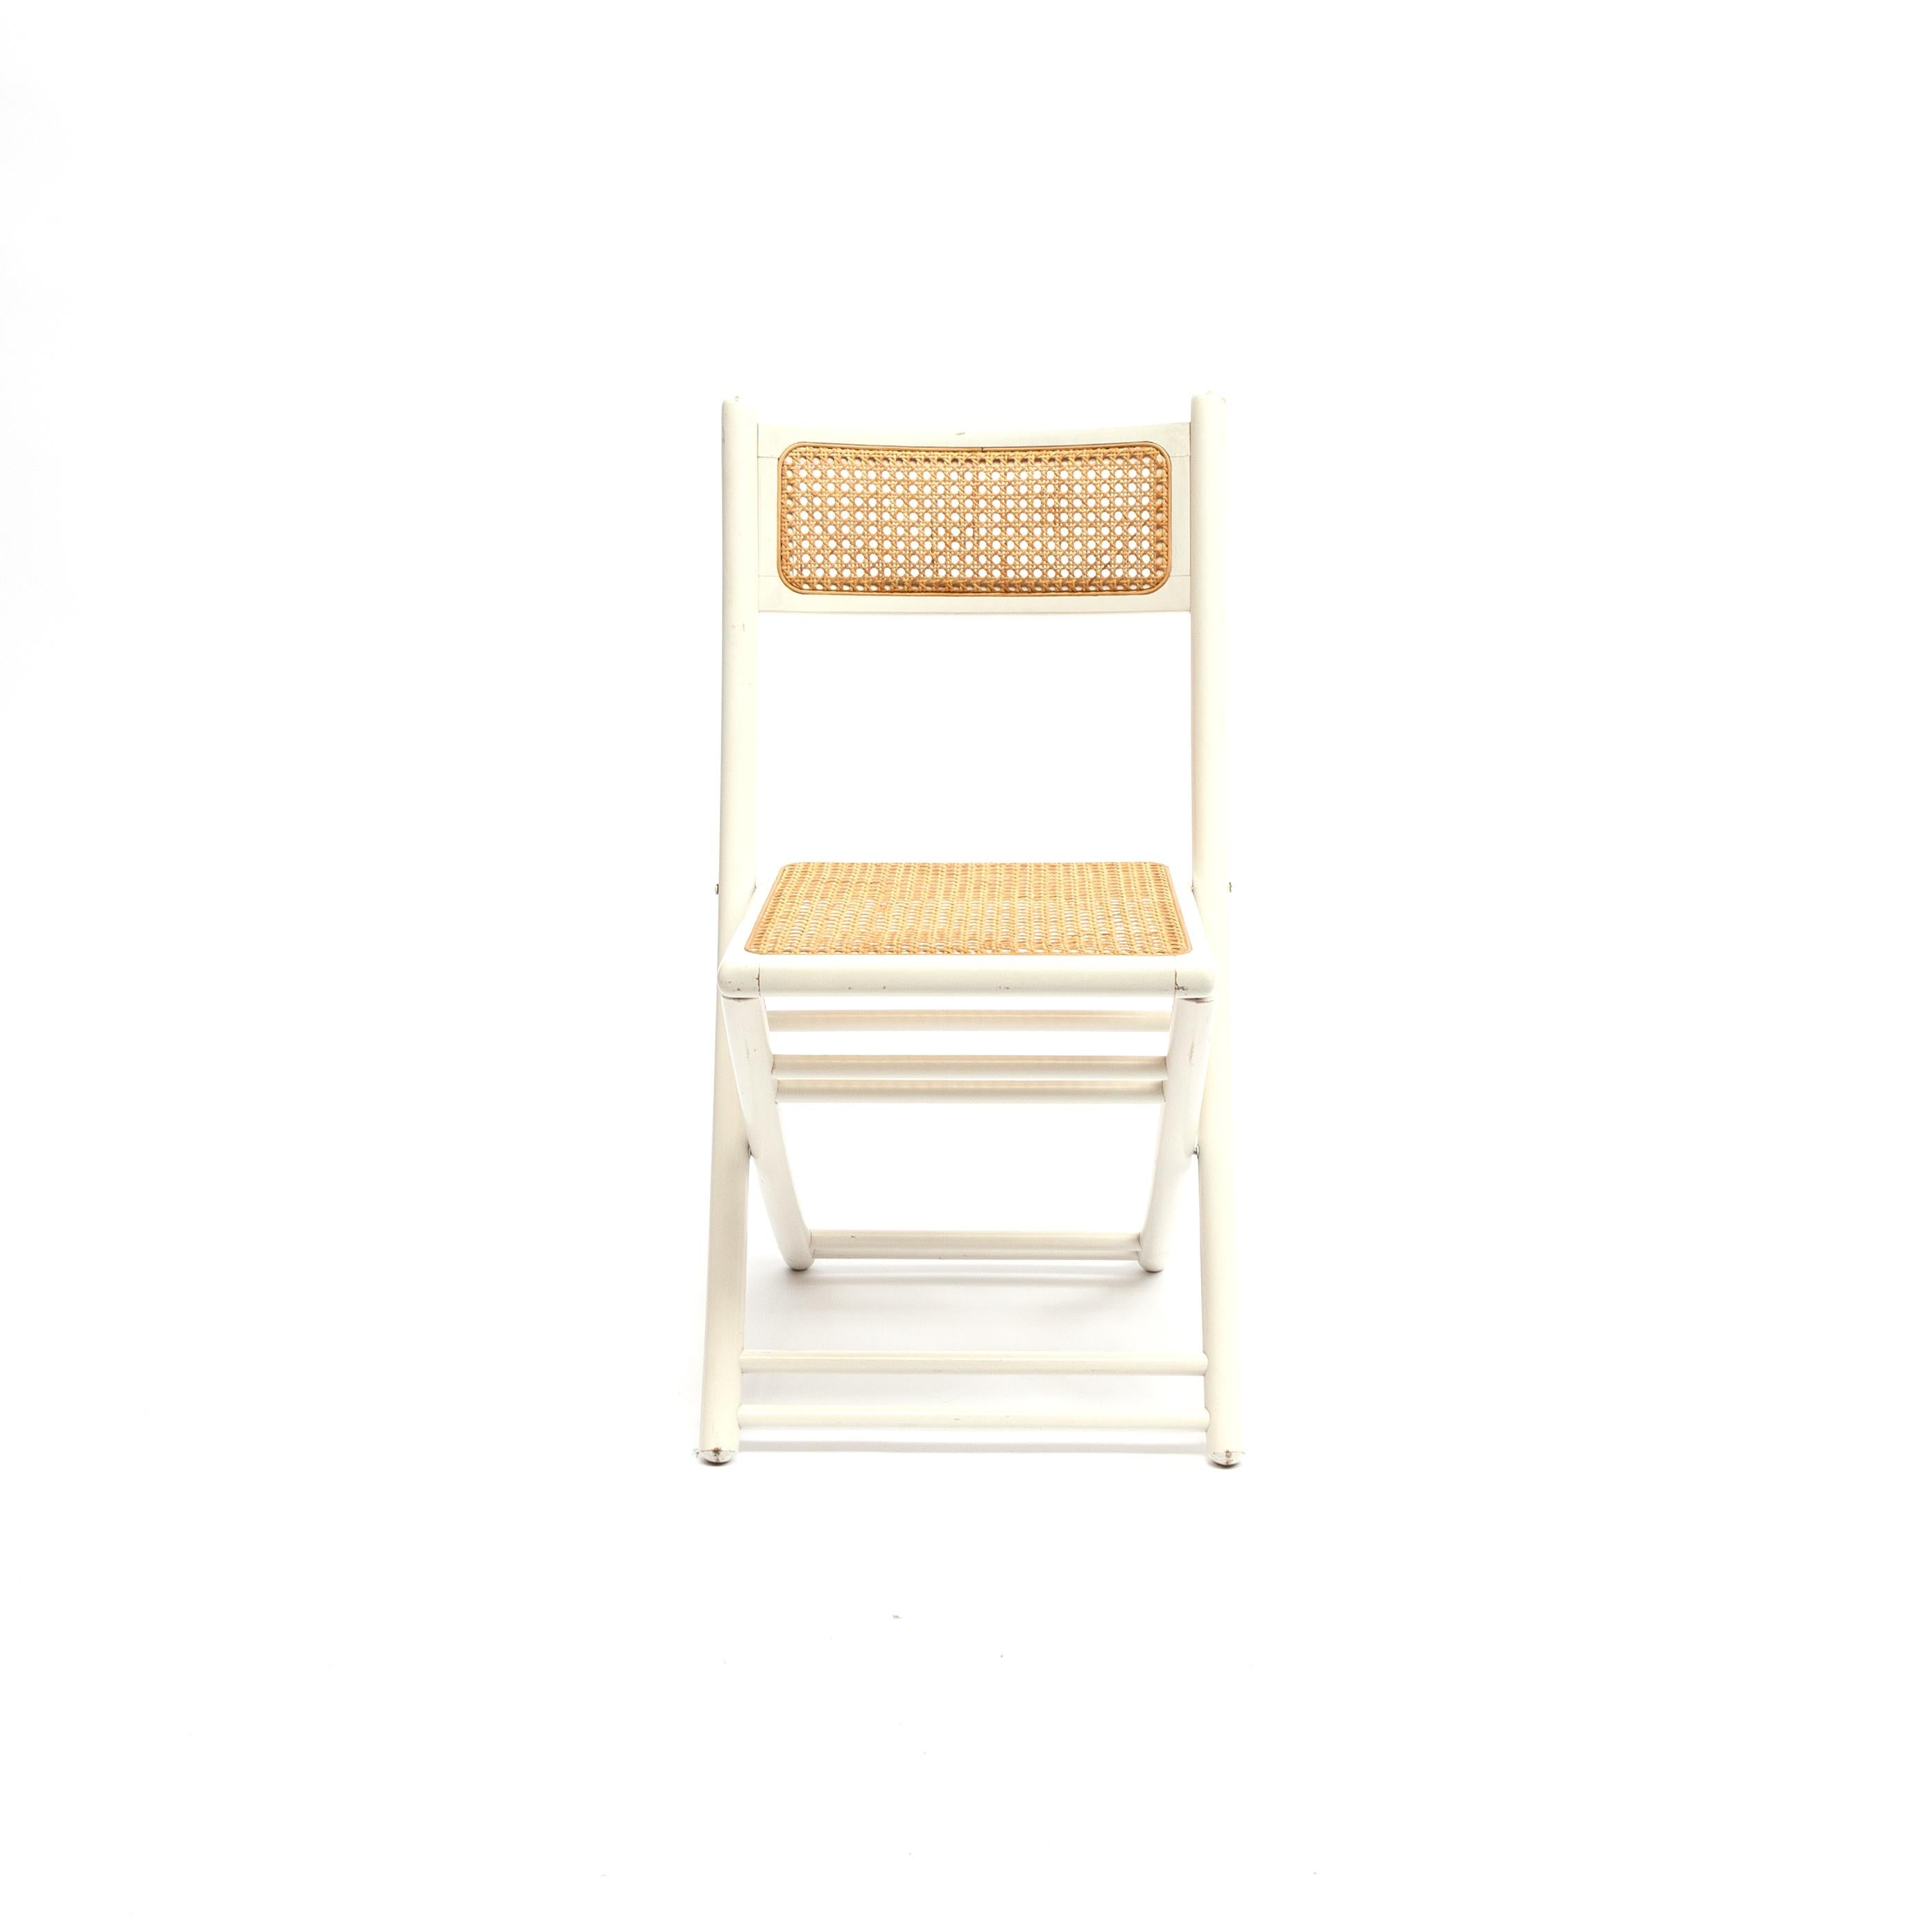 Chaise pliante originale en bois laqué blanc avec assise et dossier en sangle. Dans le style typique de Thonet, vers les années 1960-1970. État original et prêt à être utilisé.
 